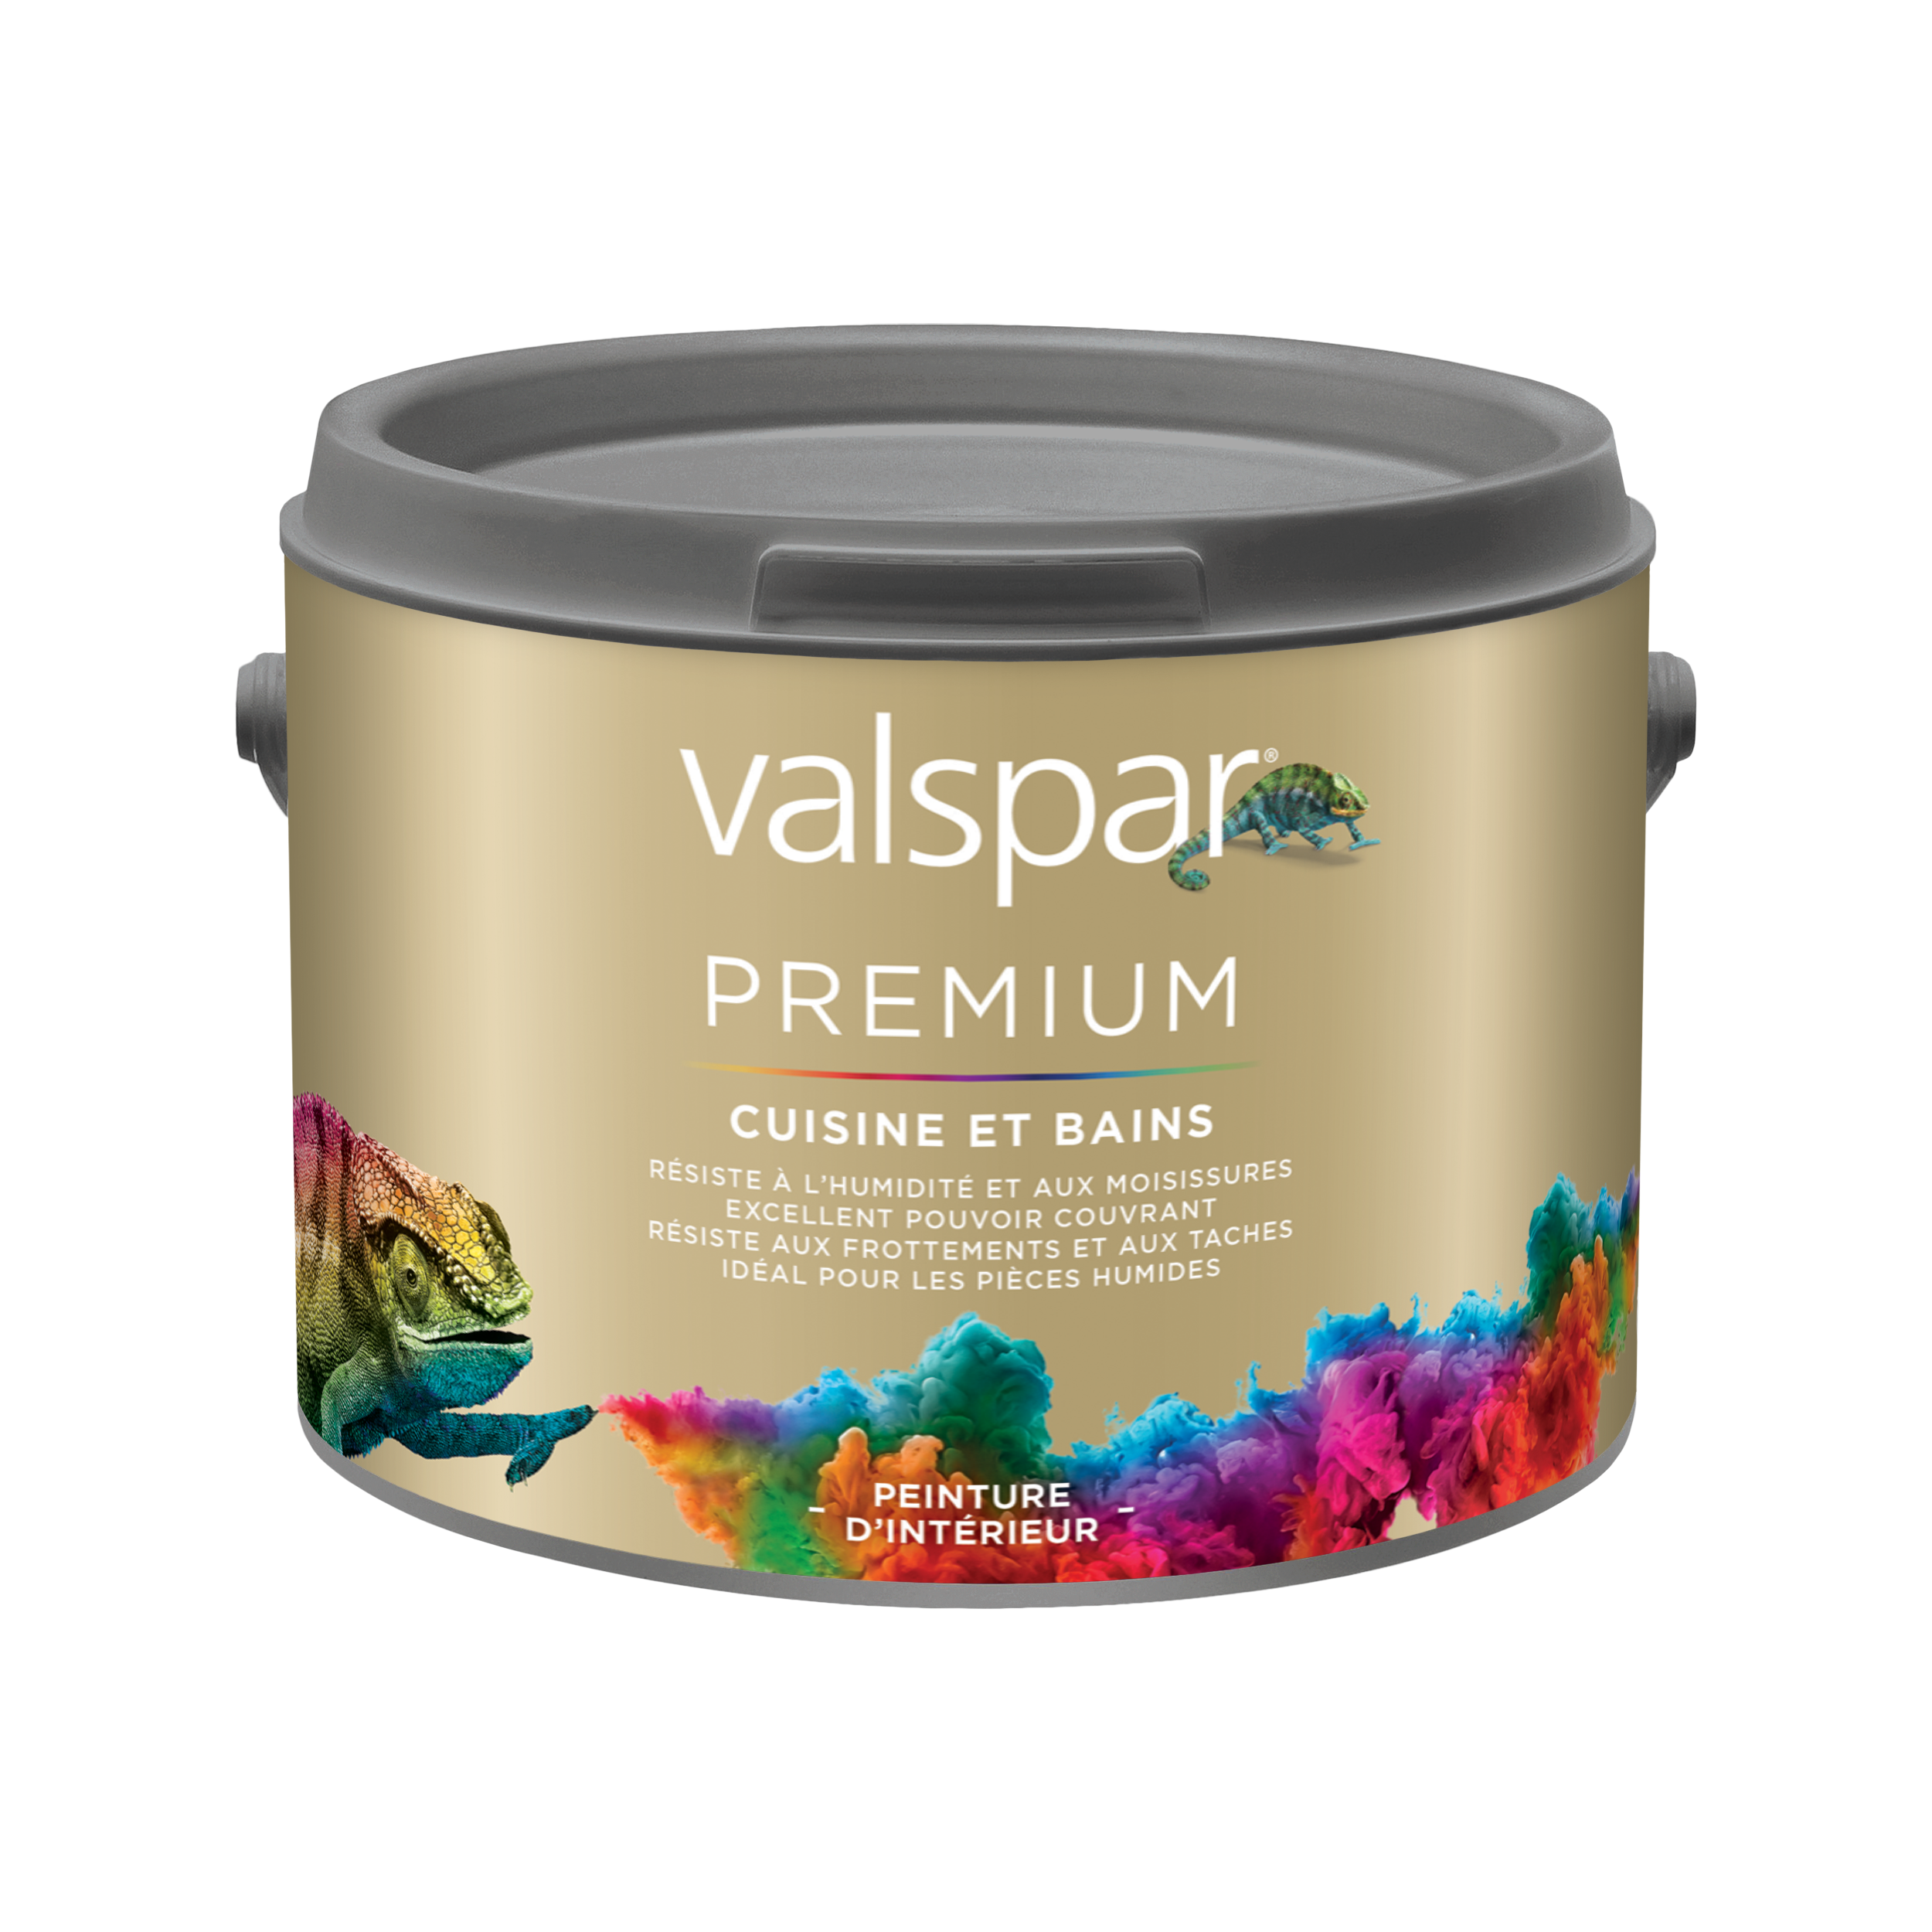 Valspar® Premium Cuisine & Bains